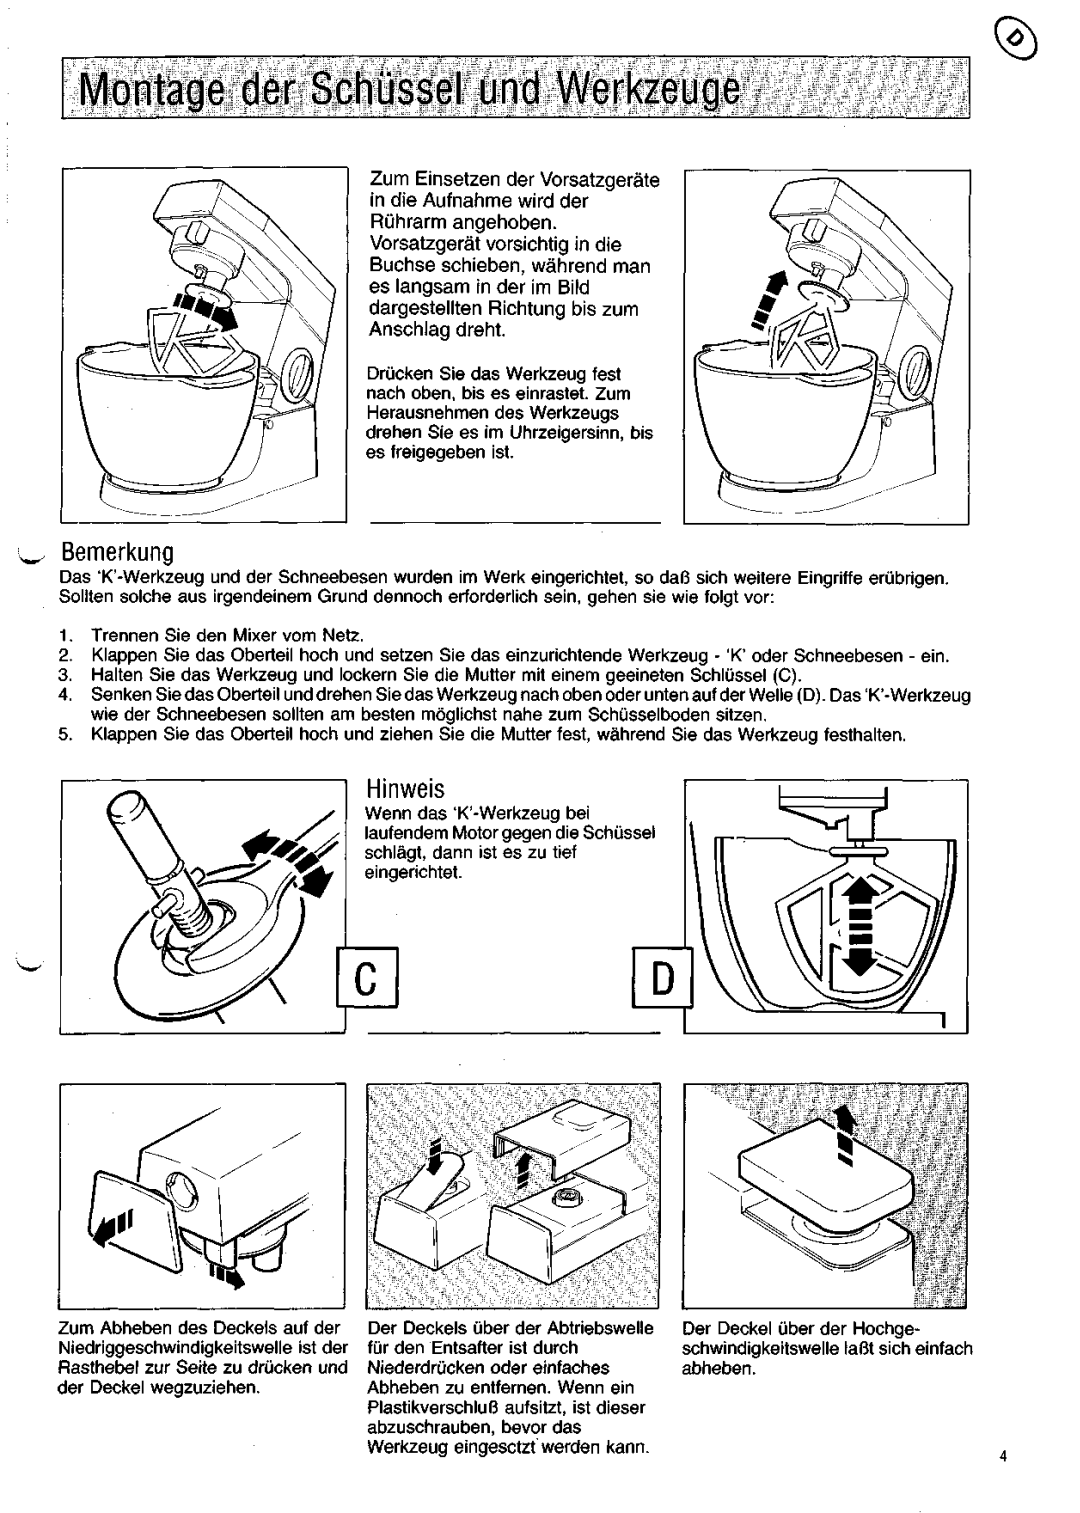 Kenwood KM200 manual Bemerkung, Hinweis, Montage derSchussel undWerkzeuge 